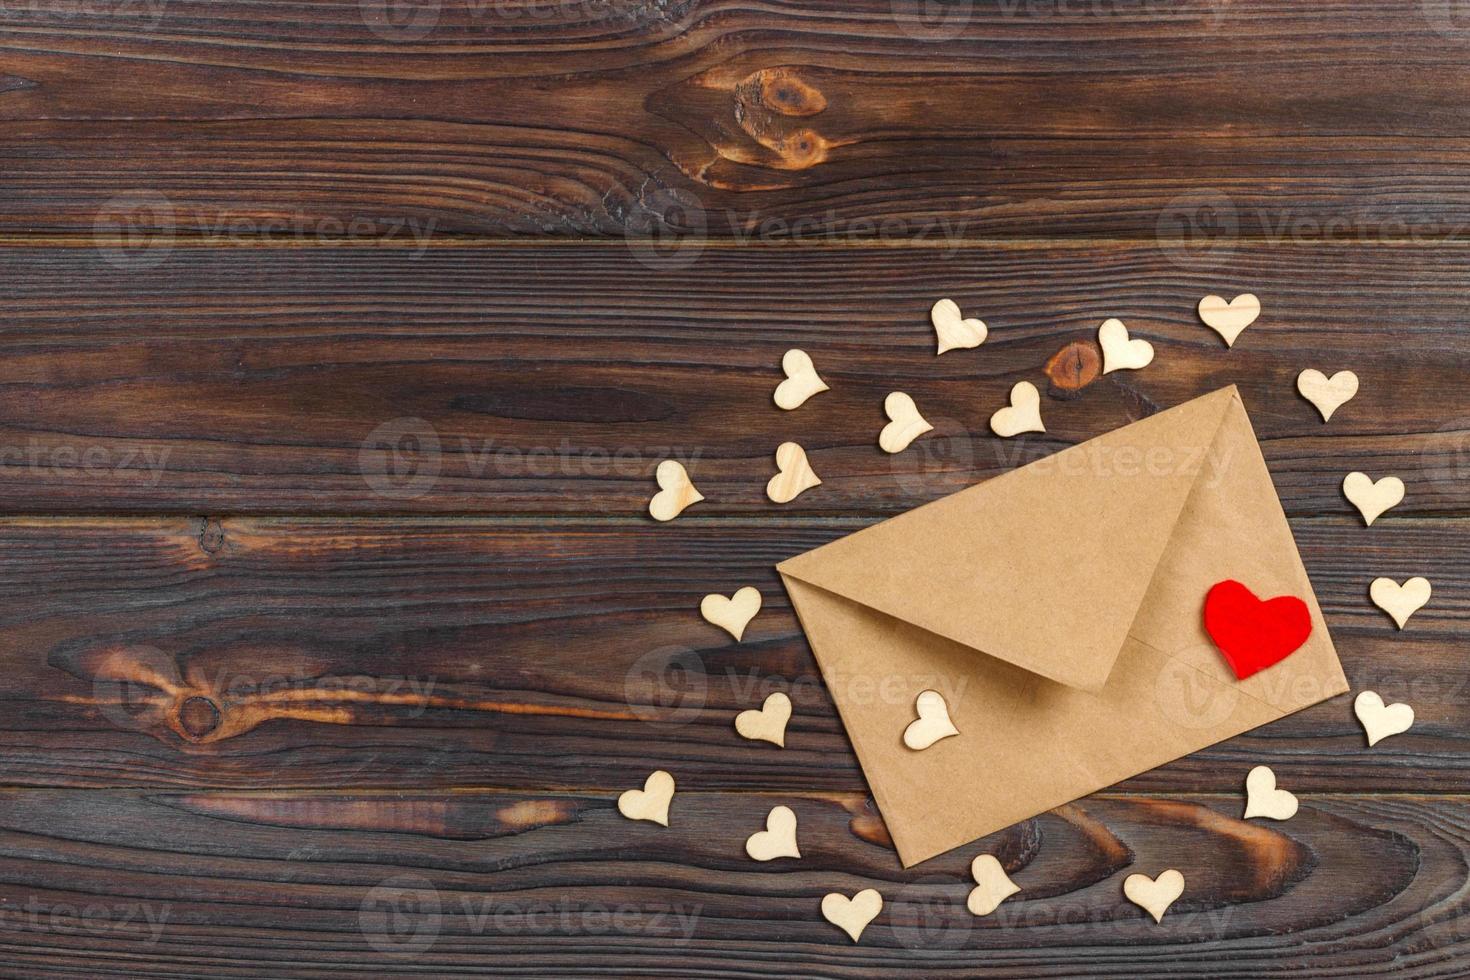 envelope e corações vermelhos de papel kraft marrom em fundo vintage envelhecido de madeira. saudação de dia dos namorados foto